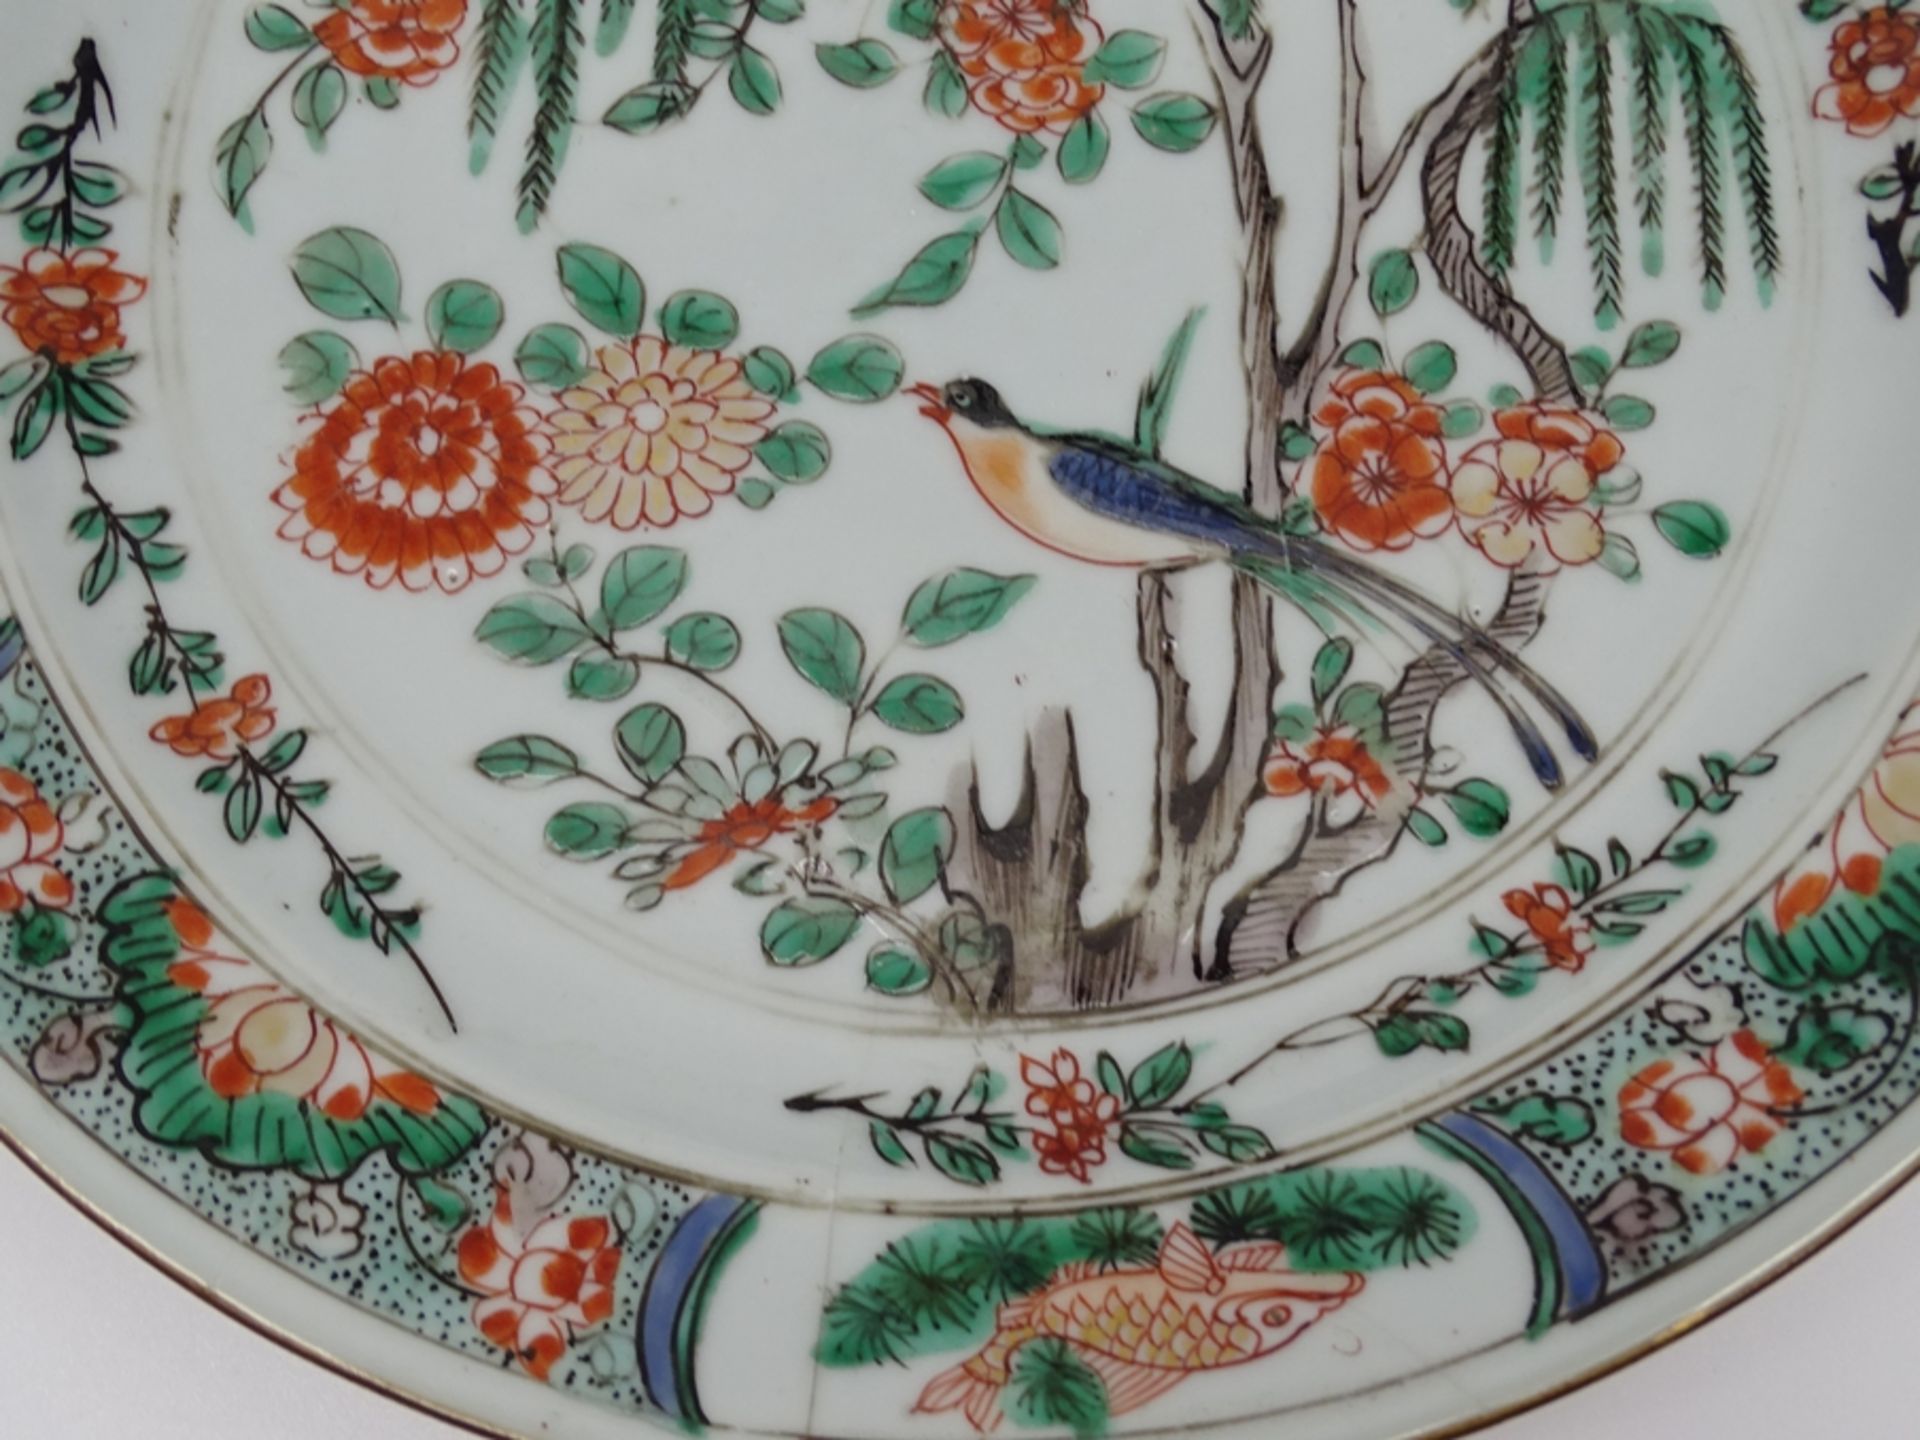 Großer Teller mit Vogel und Blumenmotiven,China, älter, D. 24cm, geklebte Stellen - Bild 2 aus 11